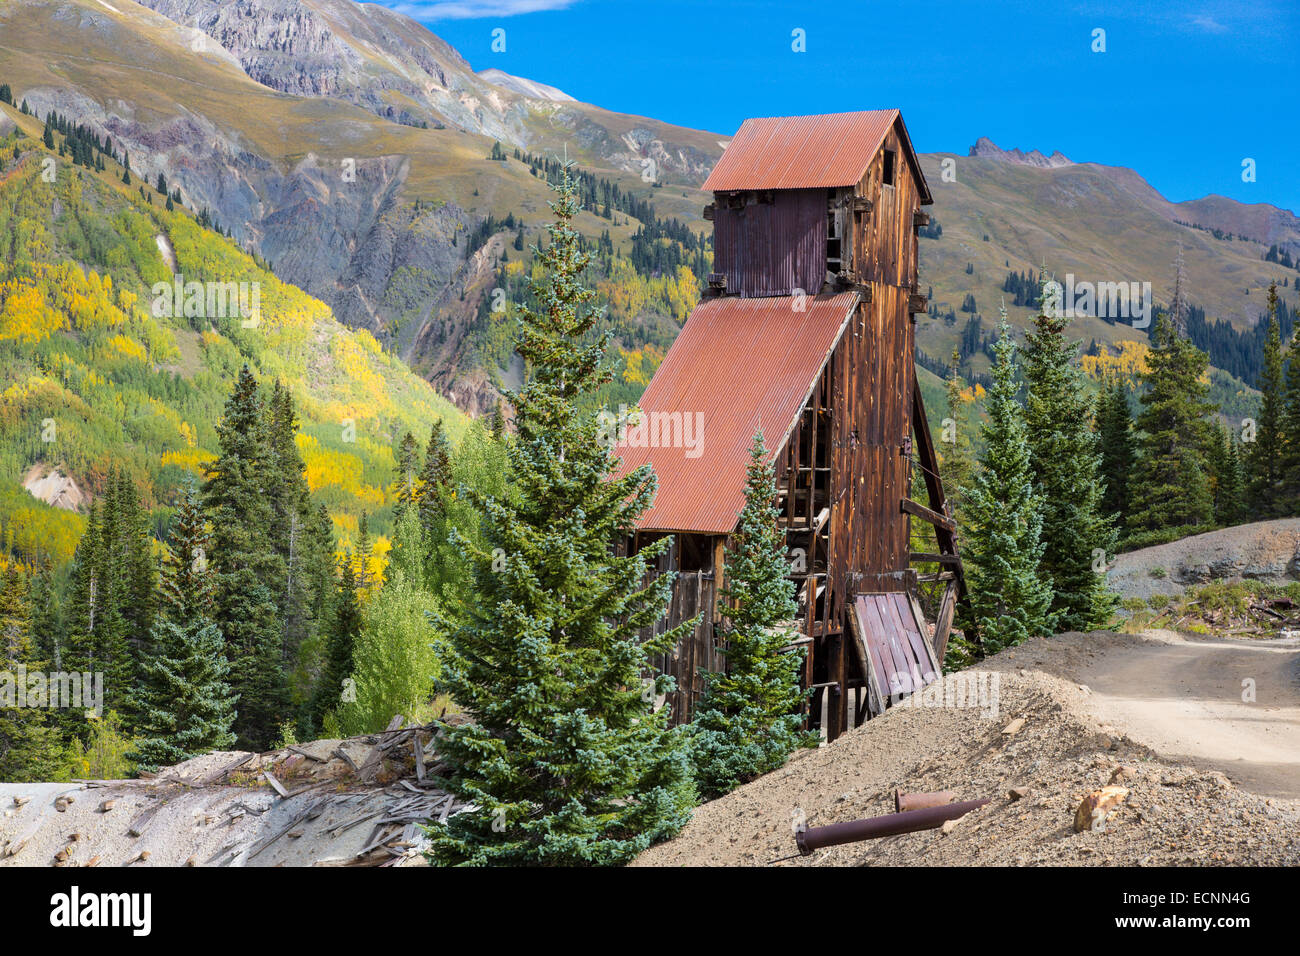 Auch genannt Yankee Mädchen Silber-Mine in der Red Mountain Minendistrikt Highway 550 Million Dollar Highway in Colorado Stockfoto